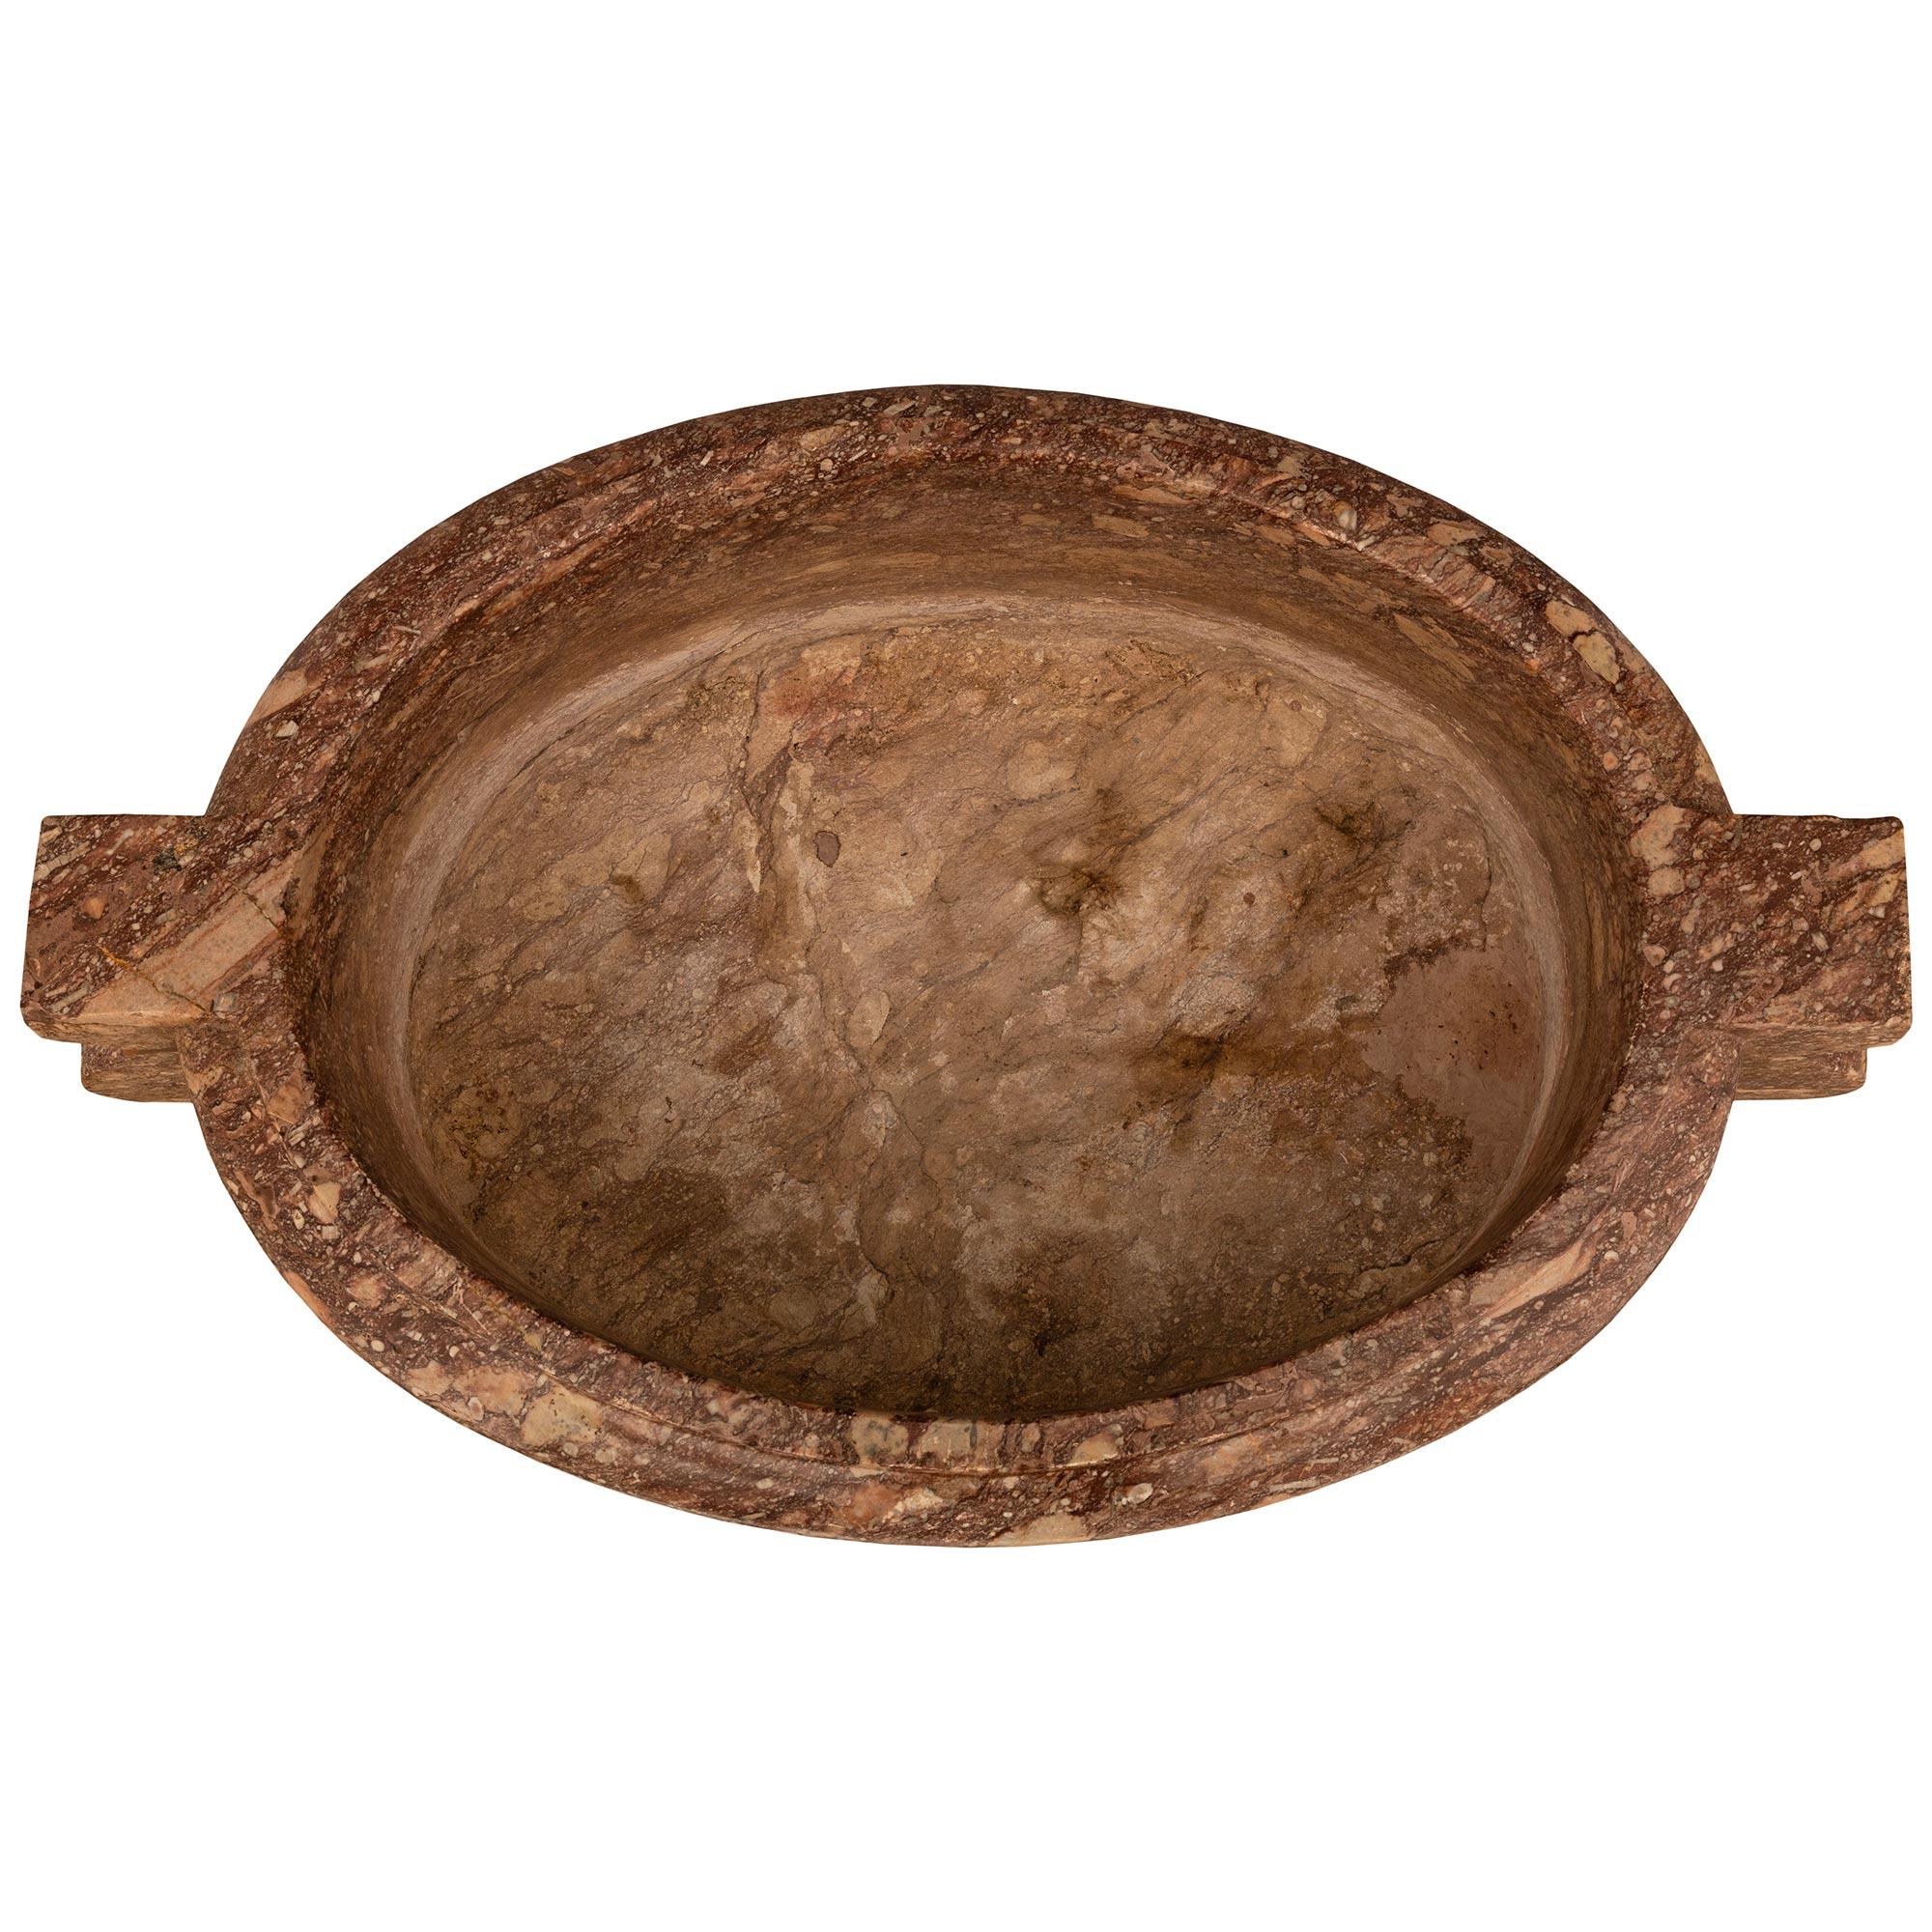 Eine stattliche und großformatige italienische Pflanzschale/Urne aus Sarrancolin-Marmor aus dem 17. Die beeindruckende Urne wird von einem gesprenkelten und gedrechselten Sockel unter der massiven Sarrancolin-Marmorschale getragen. Der ovale Korpus